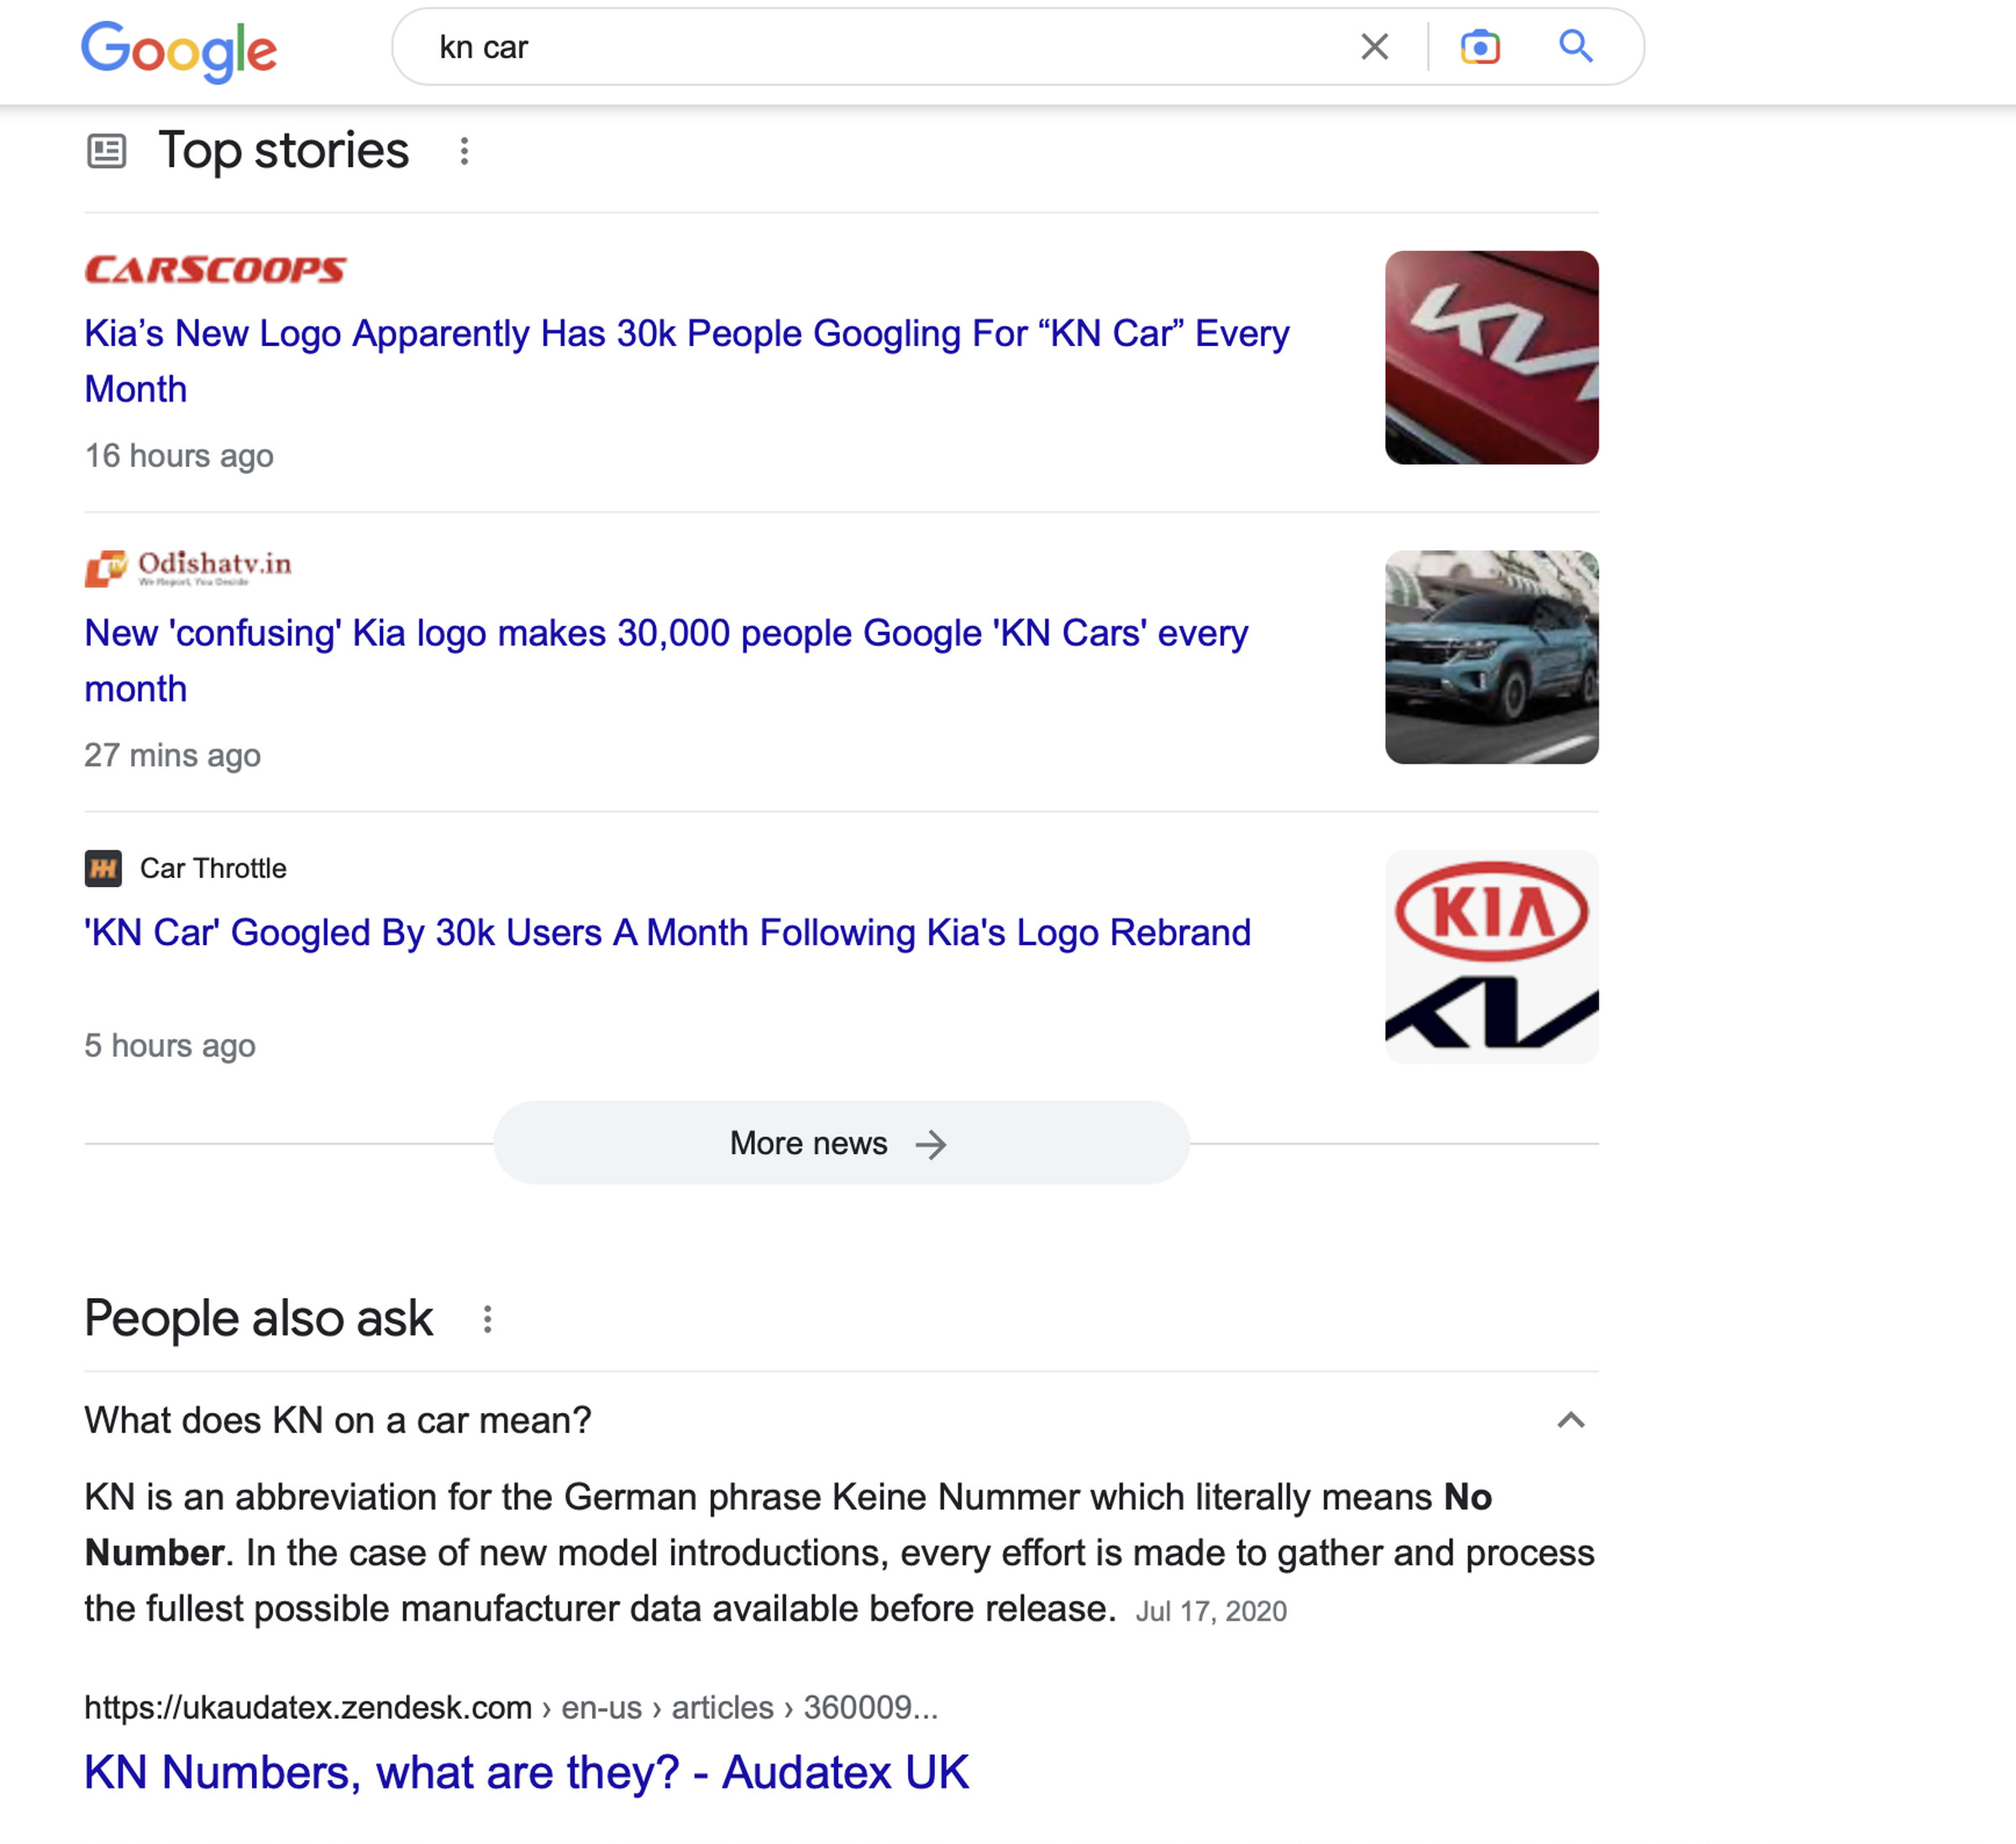 KN car の上位の Google 検索結果のスクリーンショット。3 つのニュース記事と「車の KN は何を意味するのか」の回答を示しています。